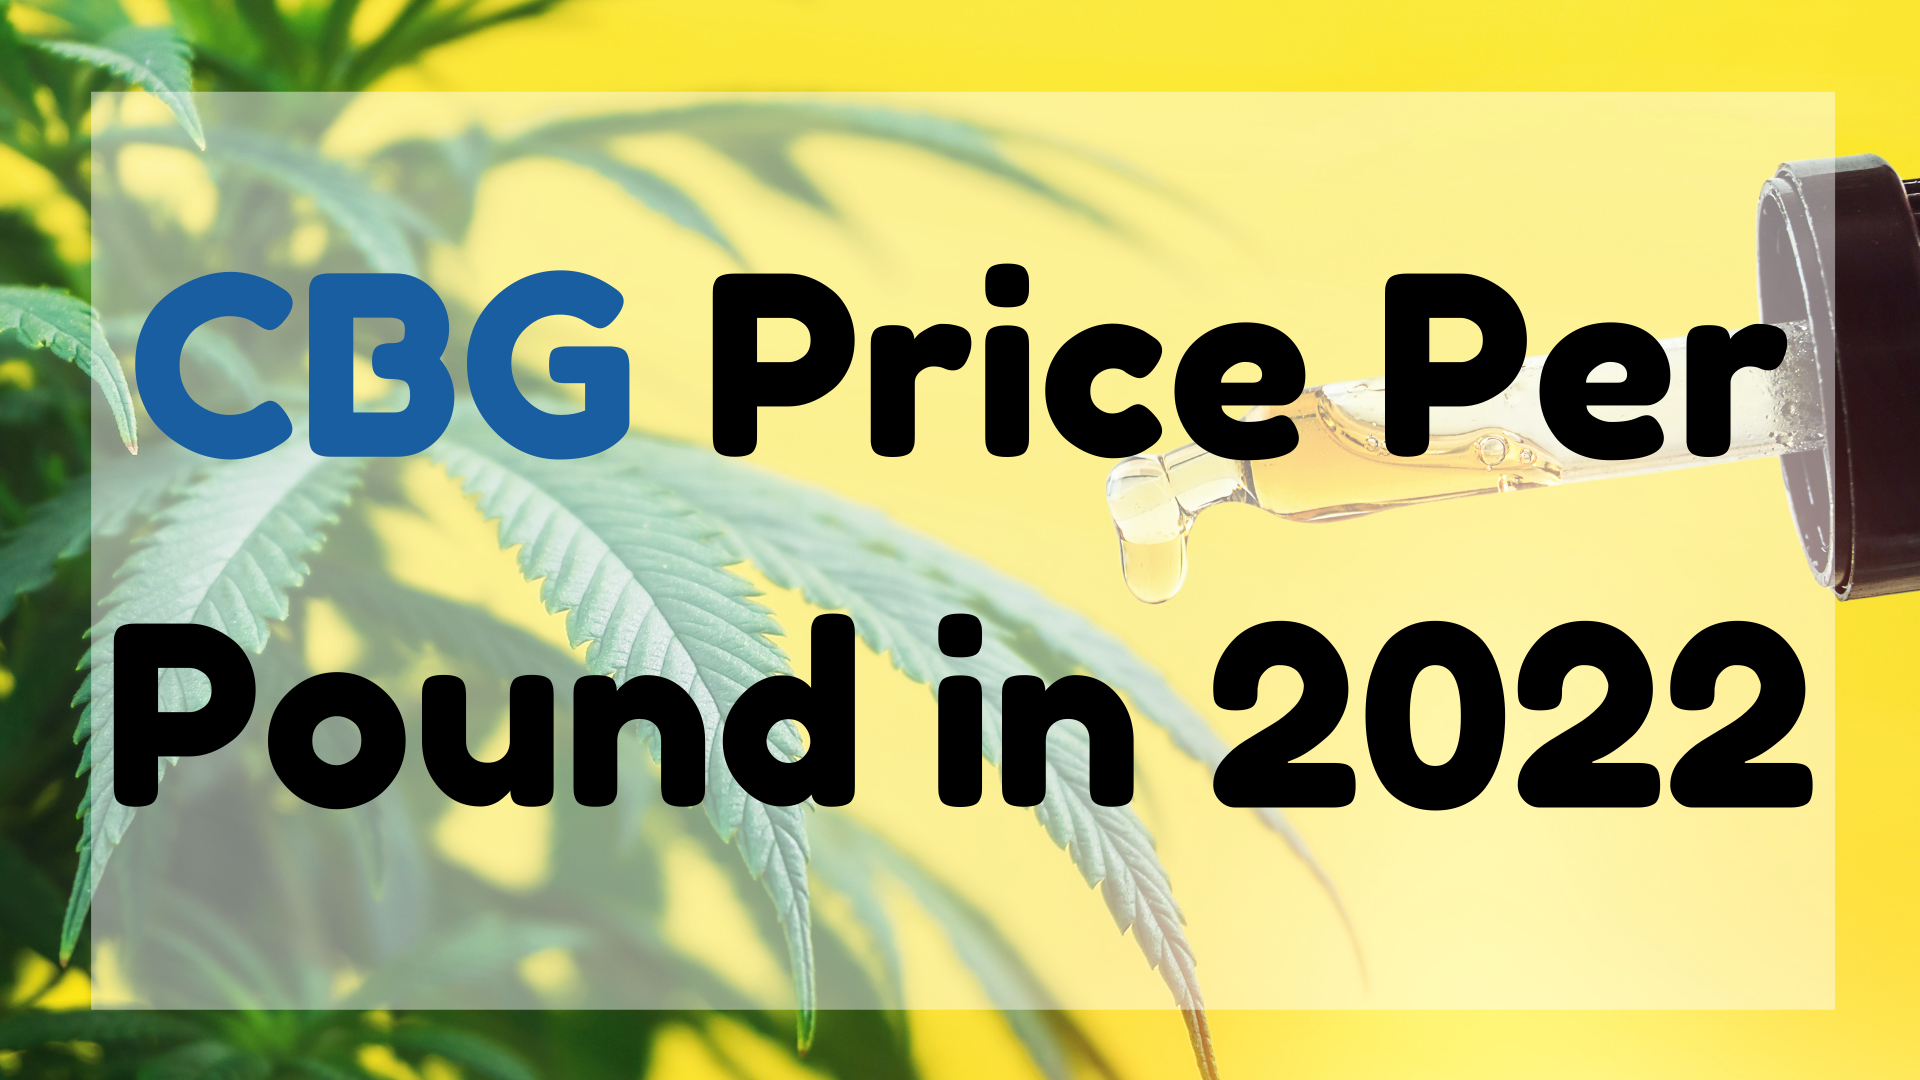 CBG Price Per Pound in 2022